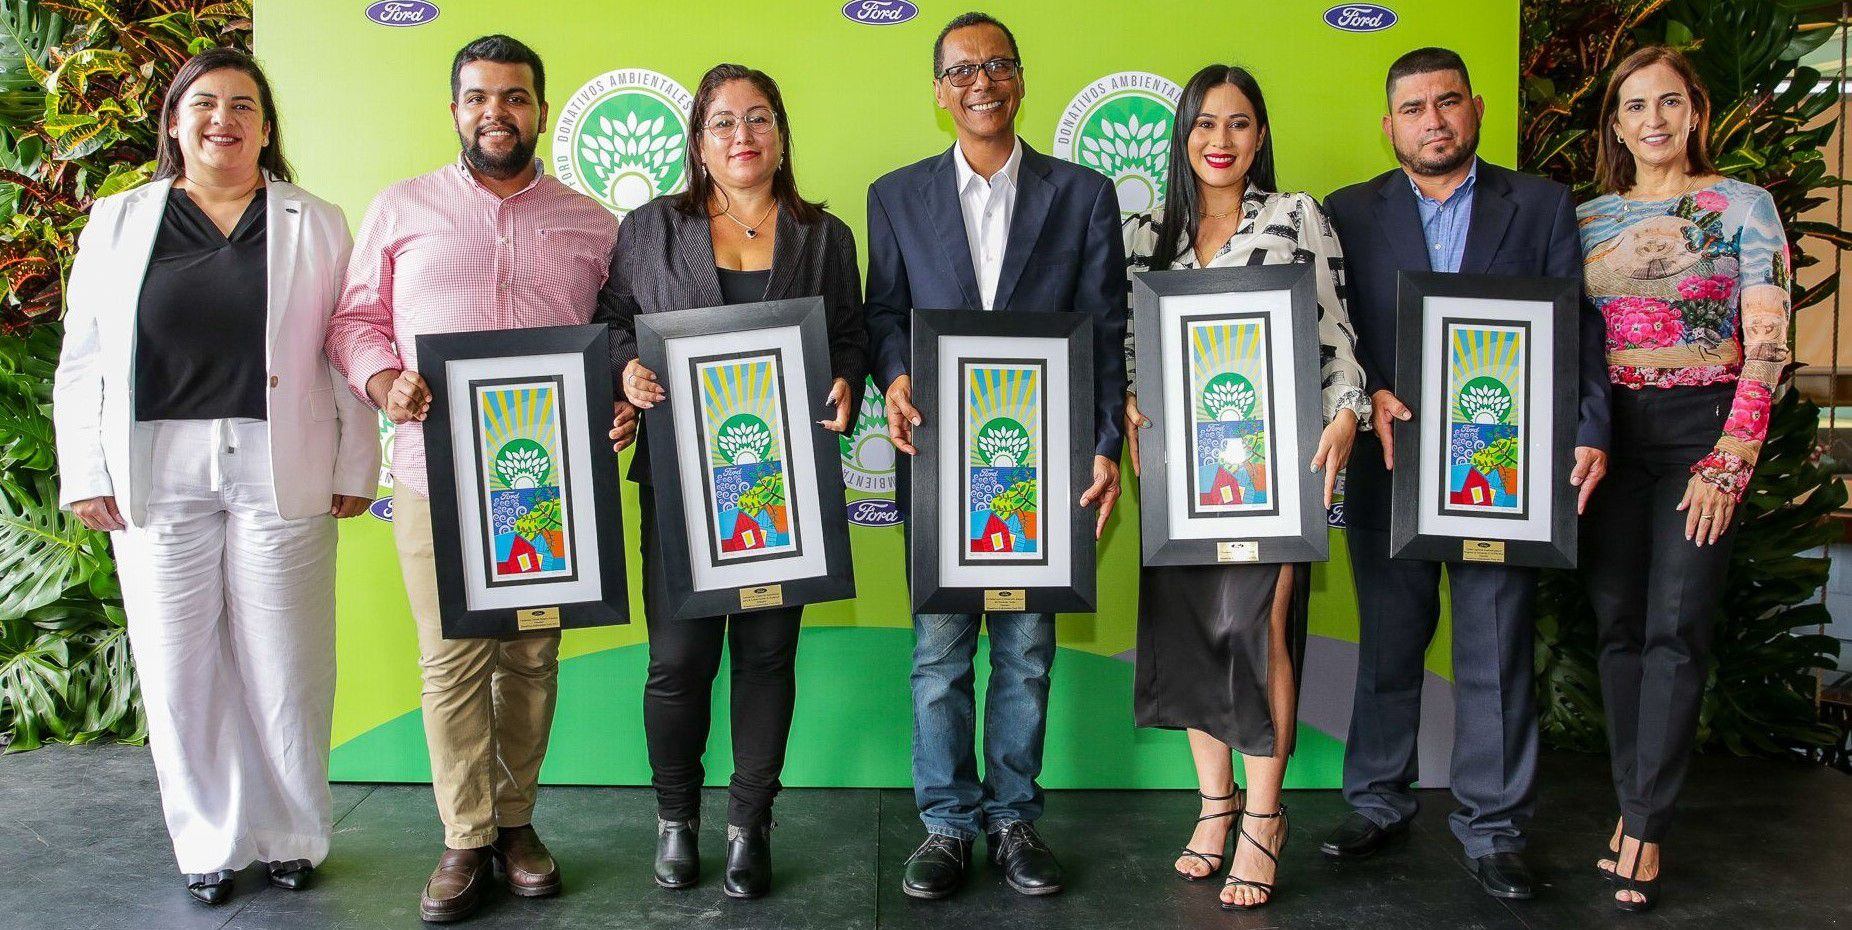 Los cinco ganadores de Donativos Ambientales Ford de este año junto a Rosángela Guerra, directora general de Ford para Centroamérica y el Caribe (izquierda) y Vivian Dávila, gerente de comunicaciones para la región (derecha).